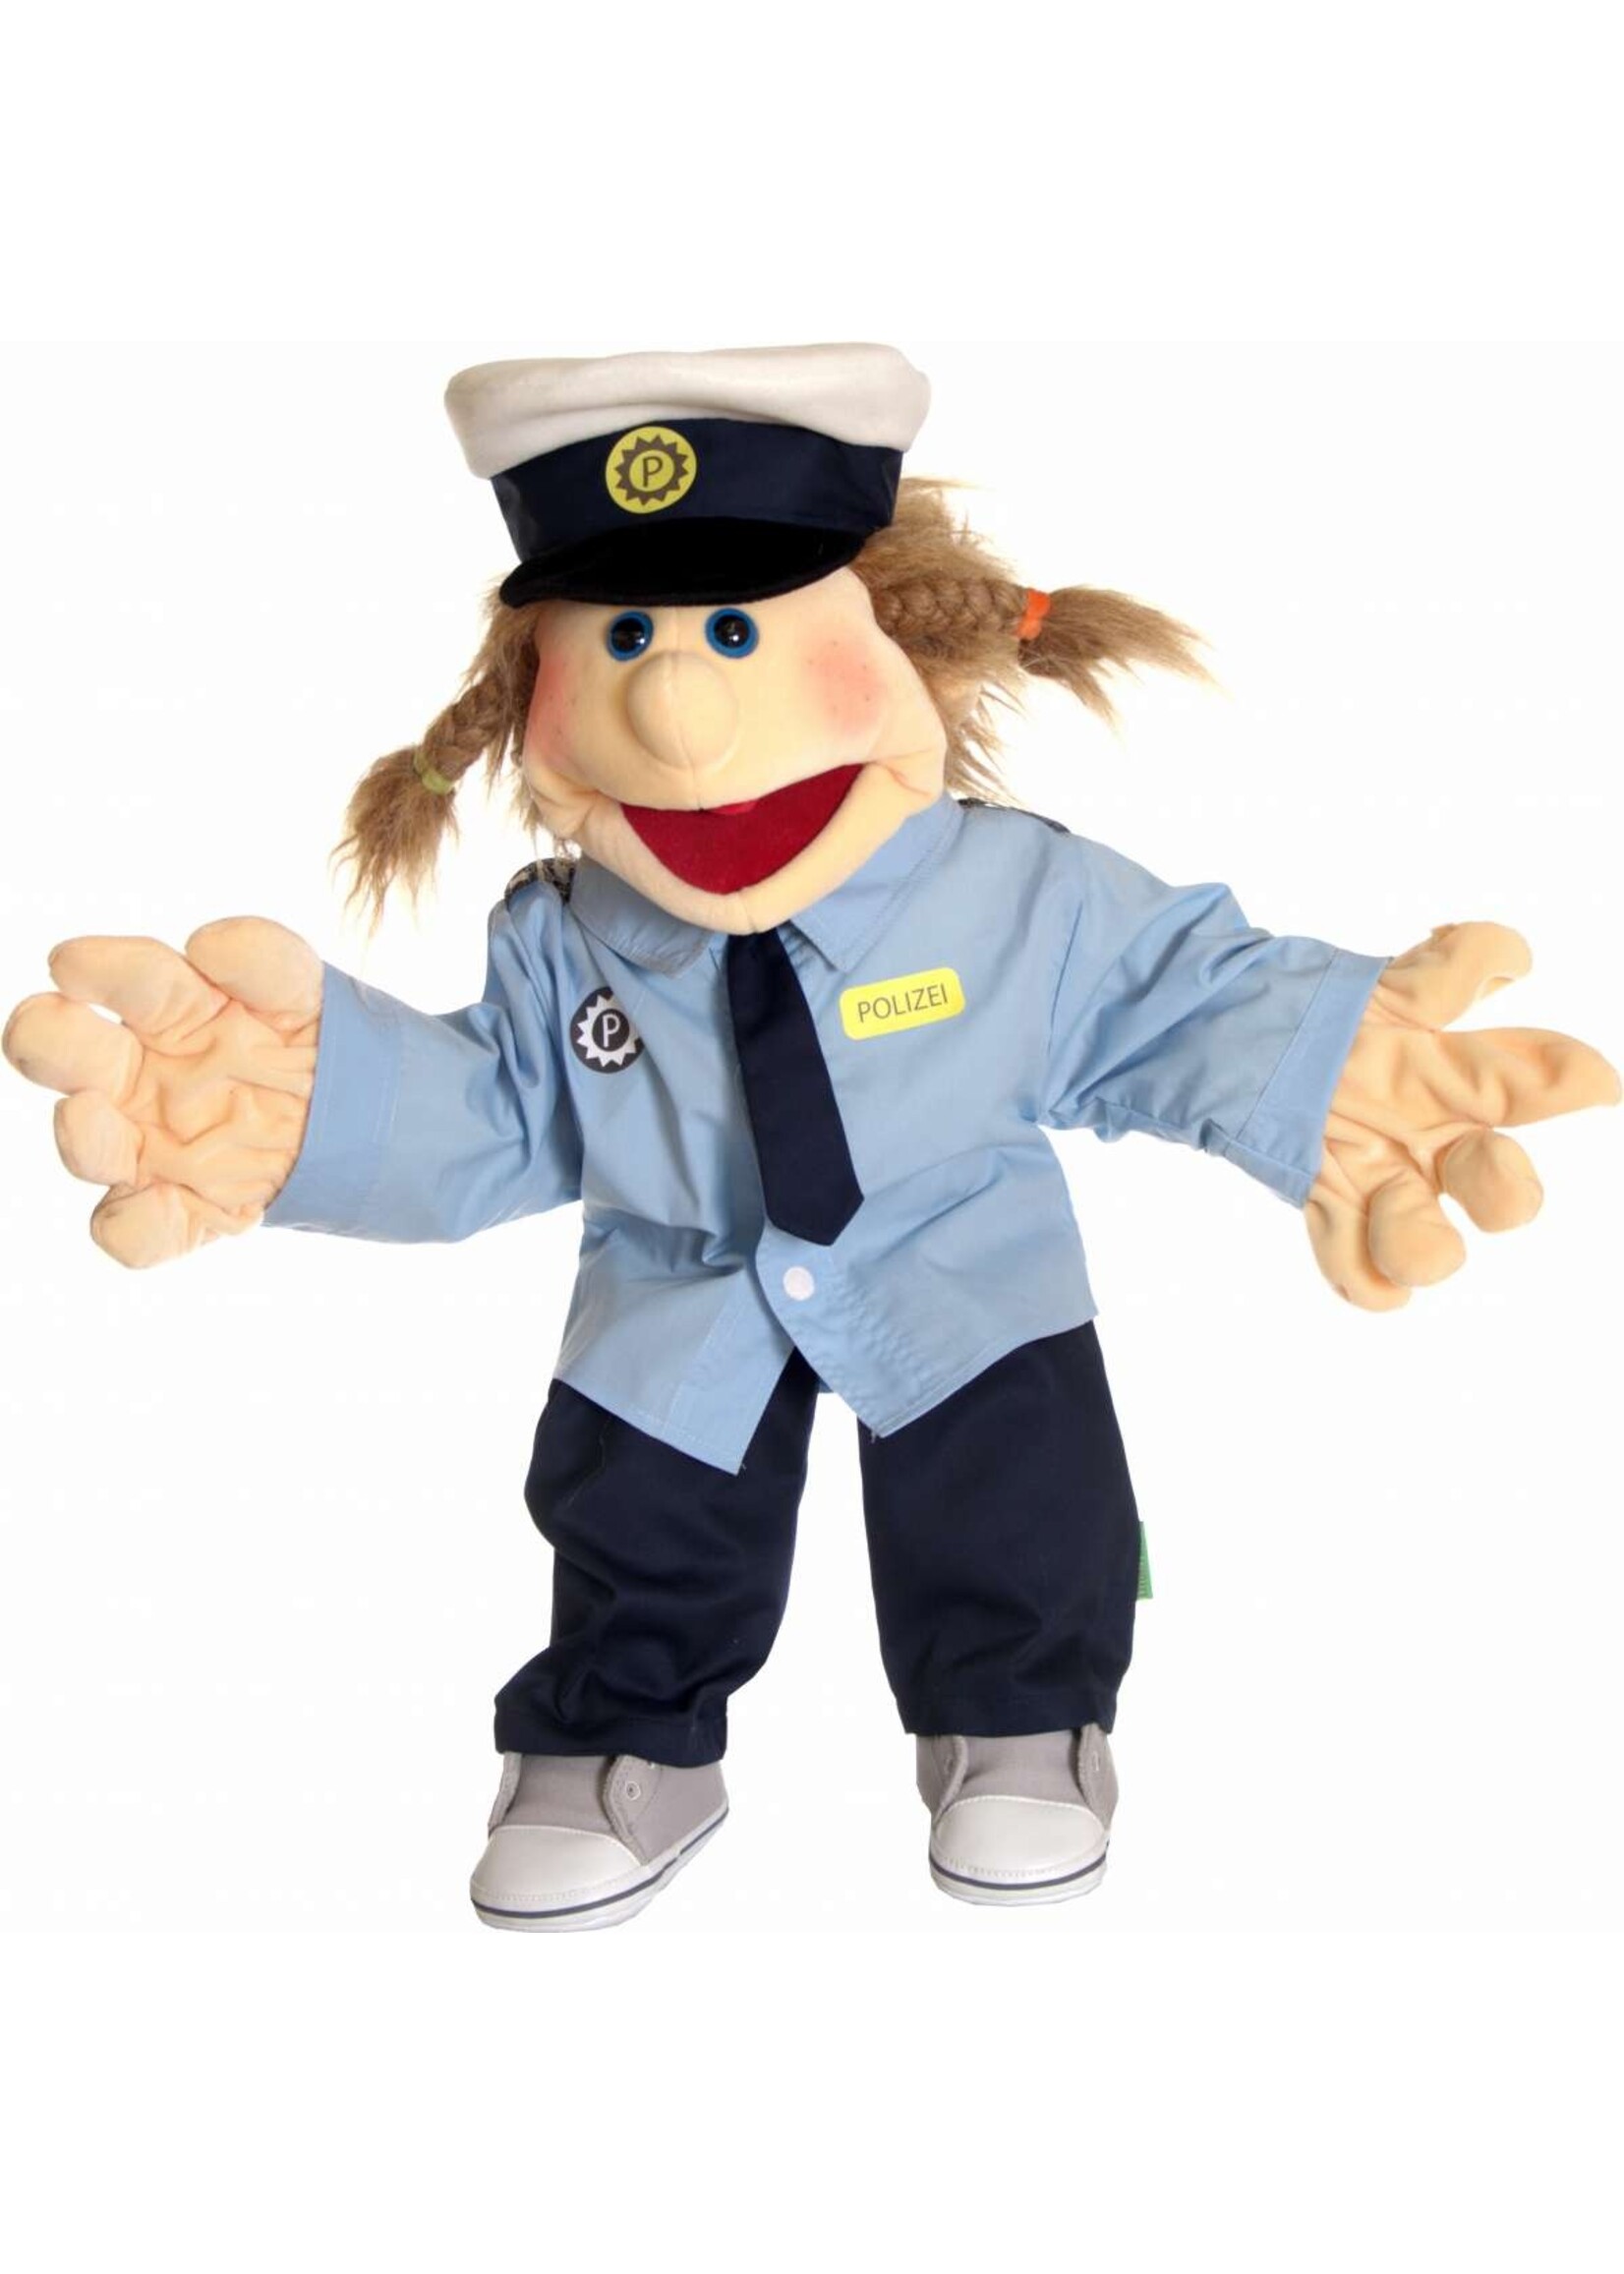 Polizei Kleidung  Puppet costume